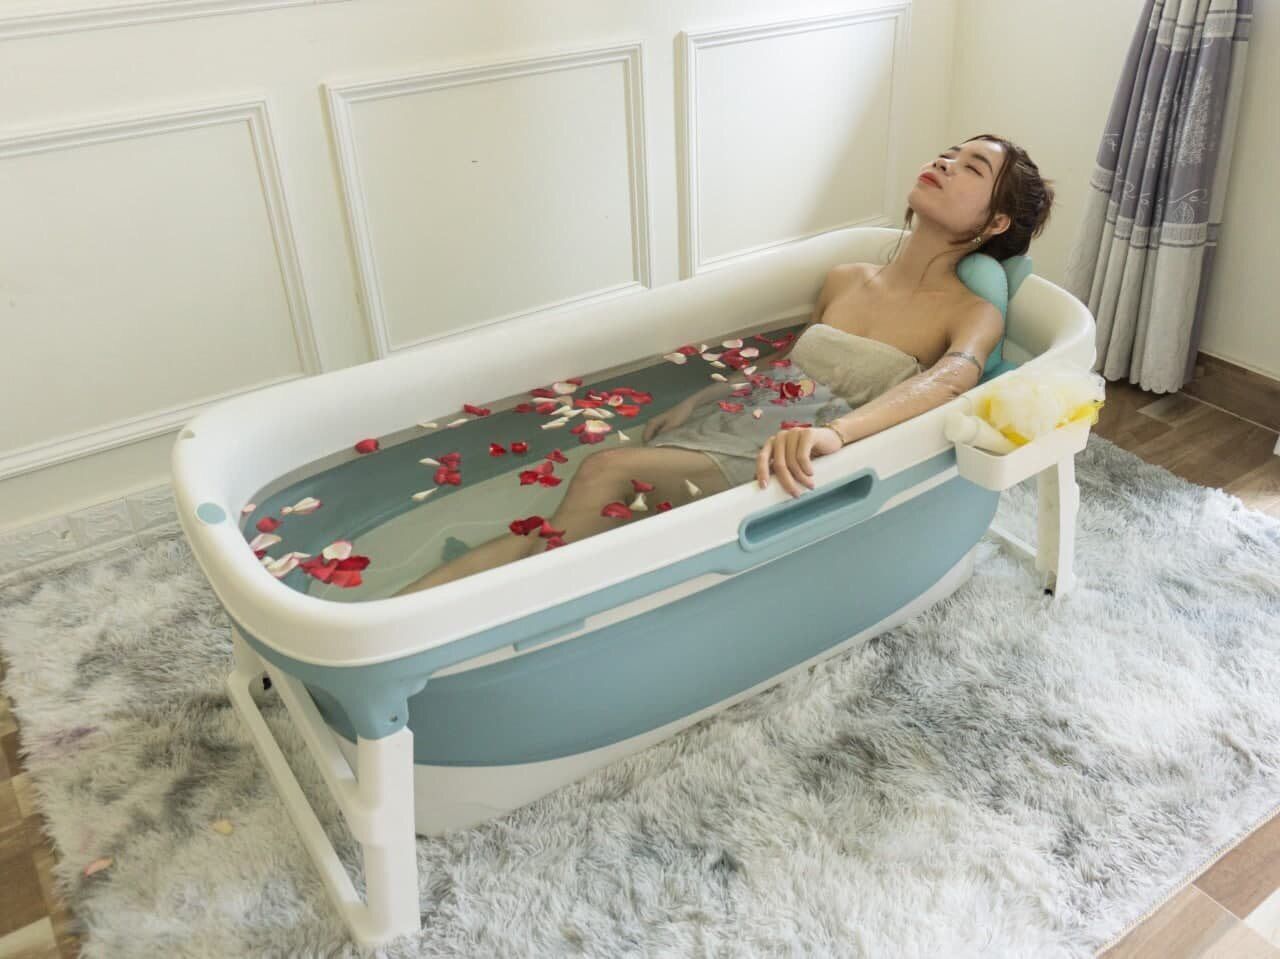 6 item giá hời giúp phòng tắm chill như ở spa chỉ từ 35.000 đồng - 1